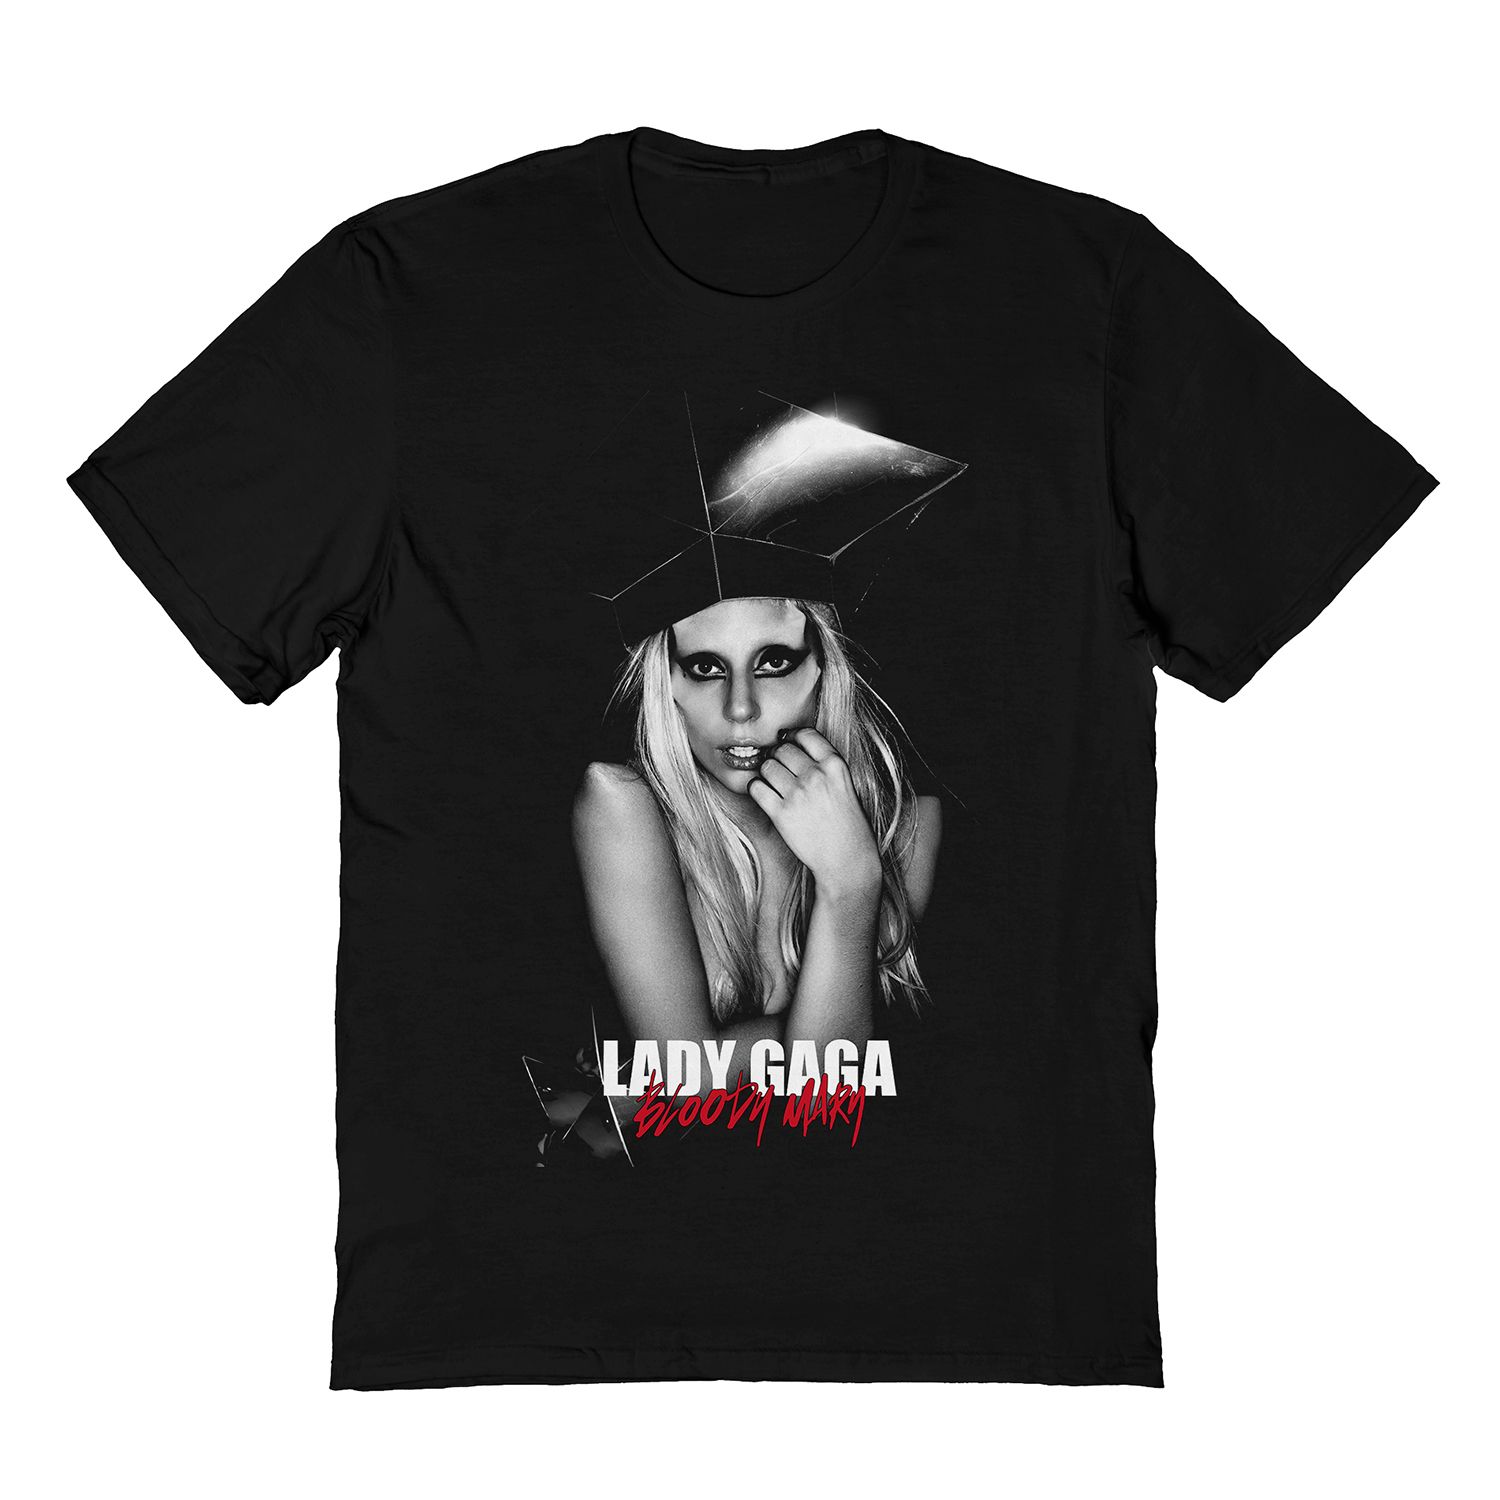 Мужская черная футболка Lady Gaga Bloody Mary Licensed Character цена и фото